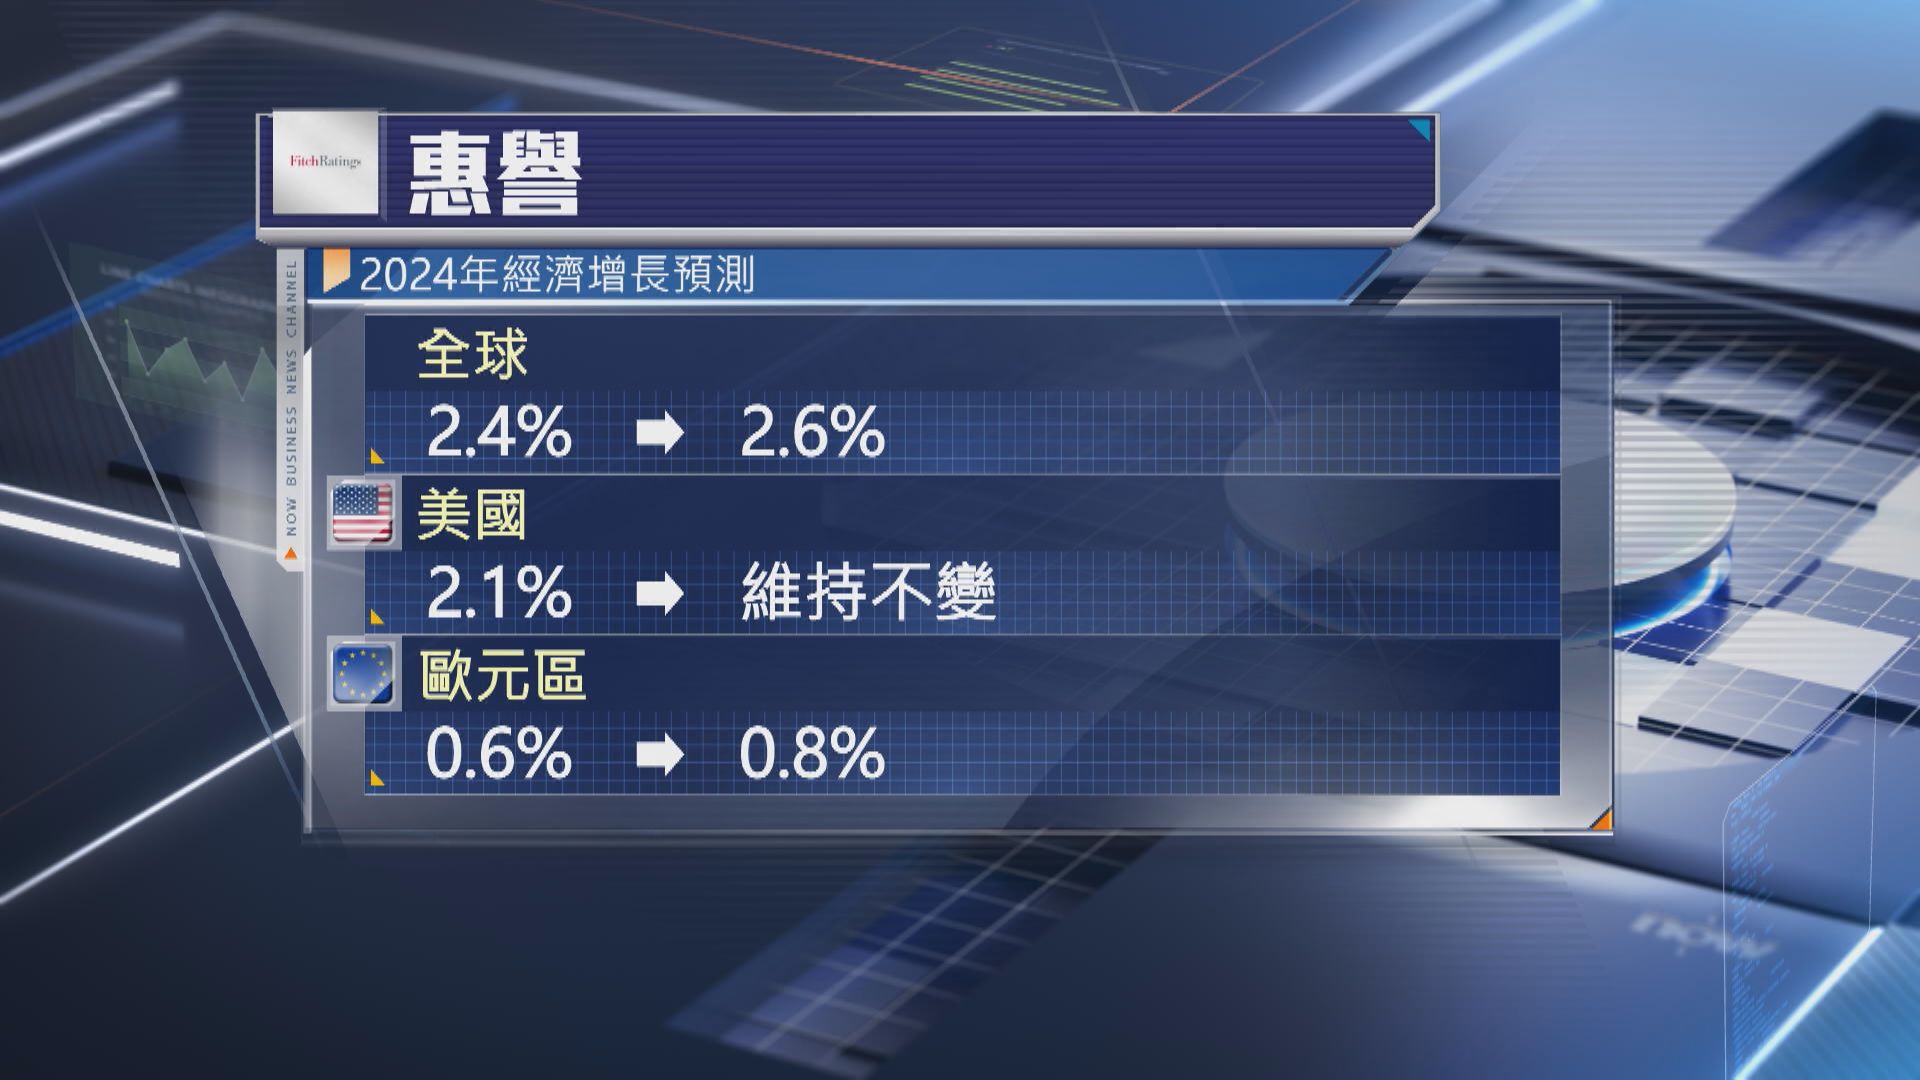 【上調預測】惠譽:今年全球經濟增長2.6% 中國則增長4.8%